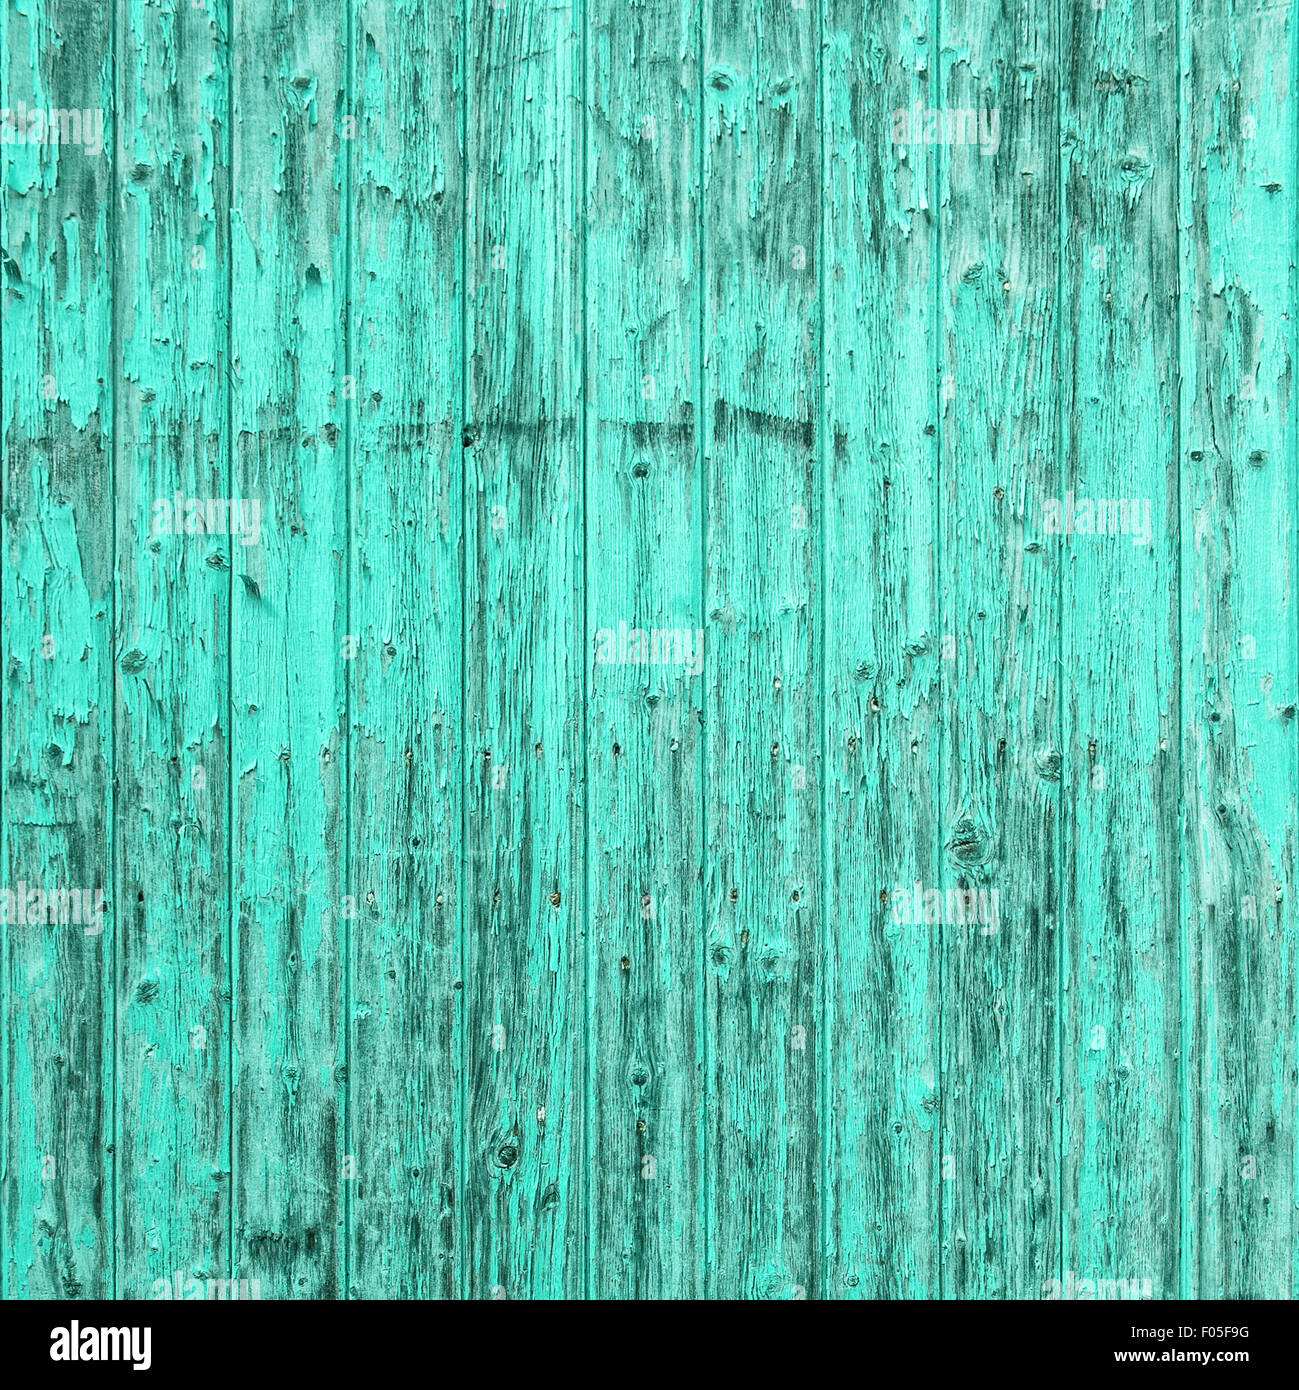 Alten türkis blauen hölzernen Hintergrund. Shabby chic Tapeten Textur Stockfoto